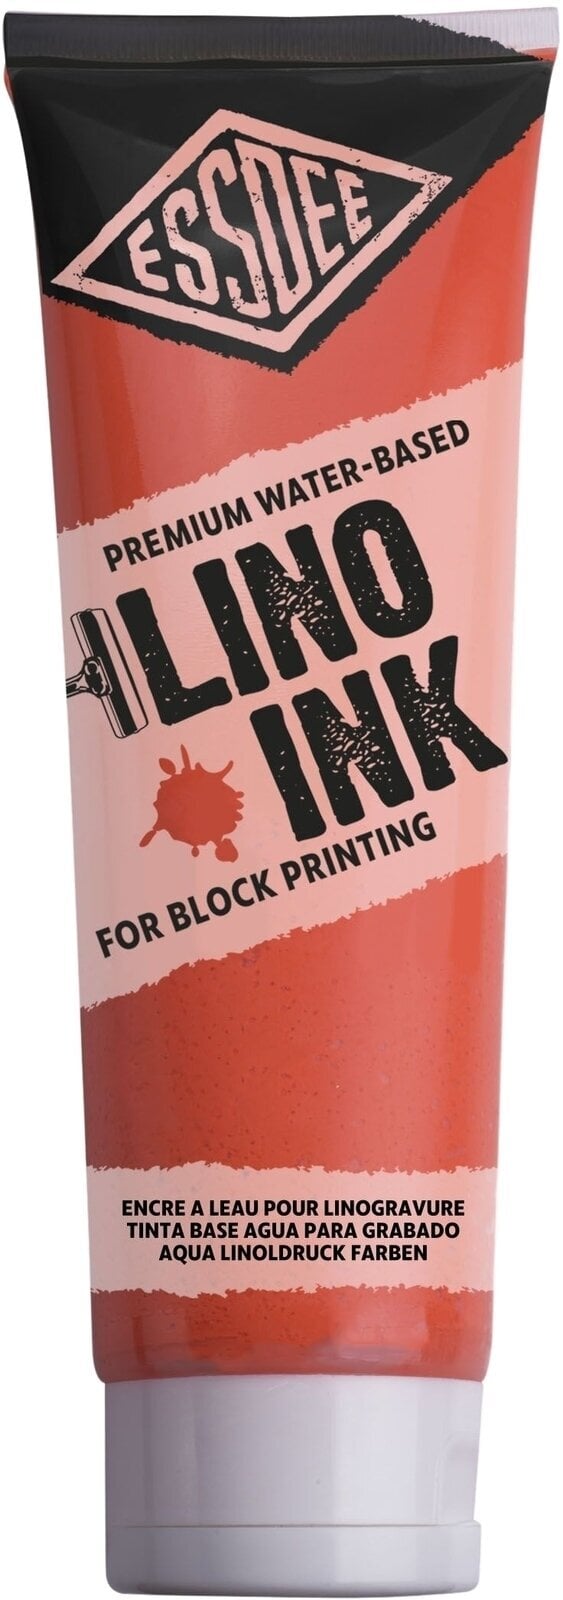 Χρώμα για λινογραφία Essdee Block Printing Ink Χρώμα για λινογραφία Fluorescent Orange 300 ml